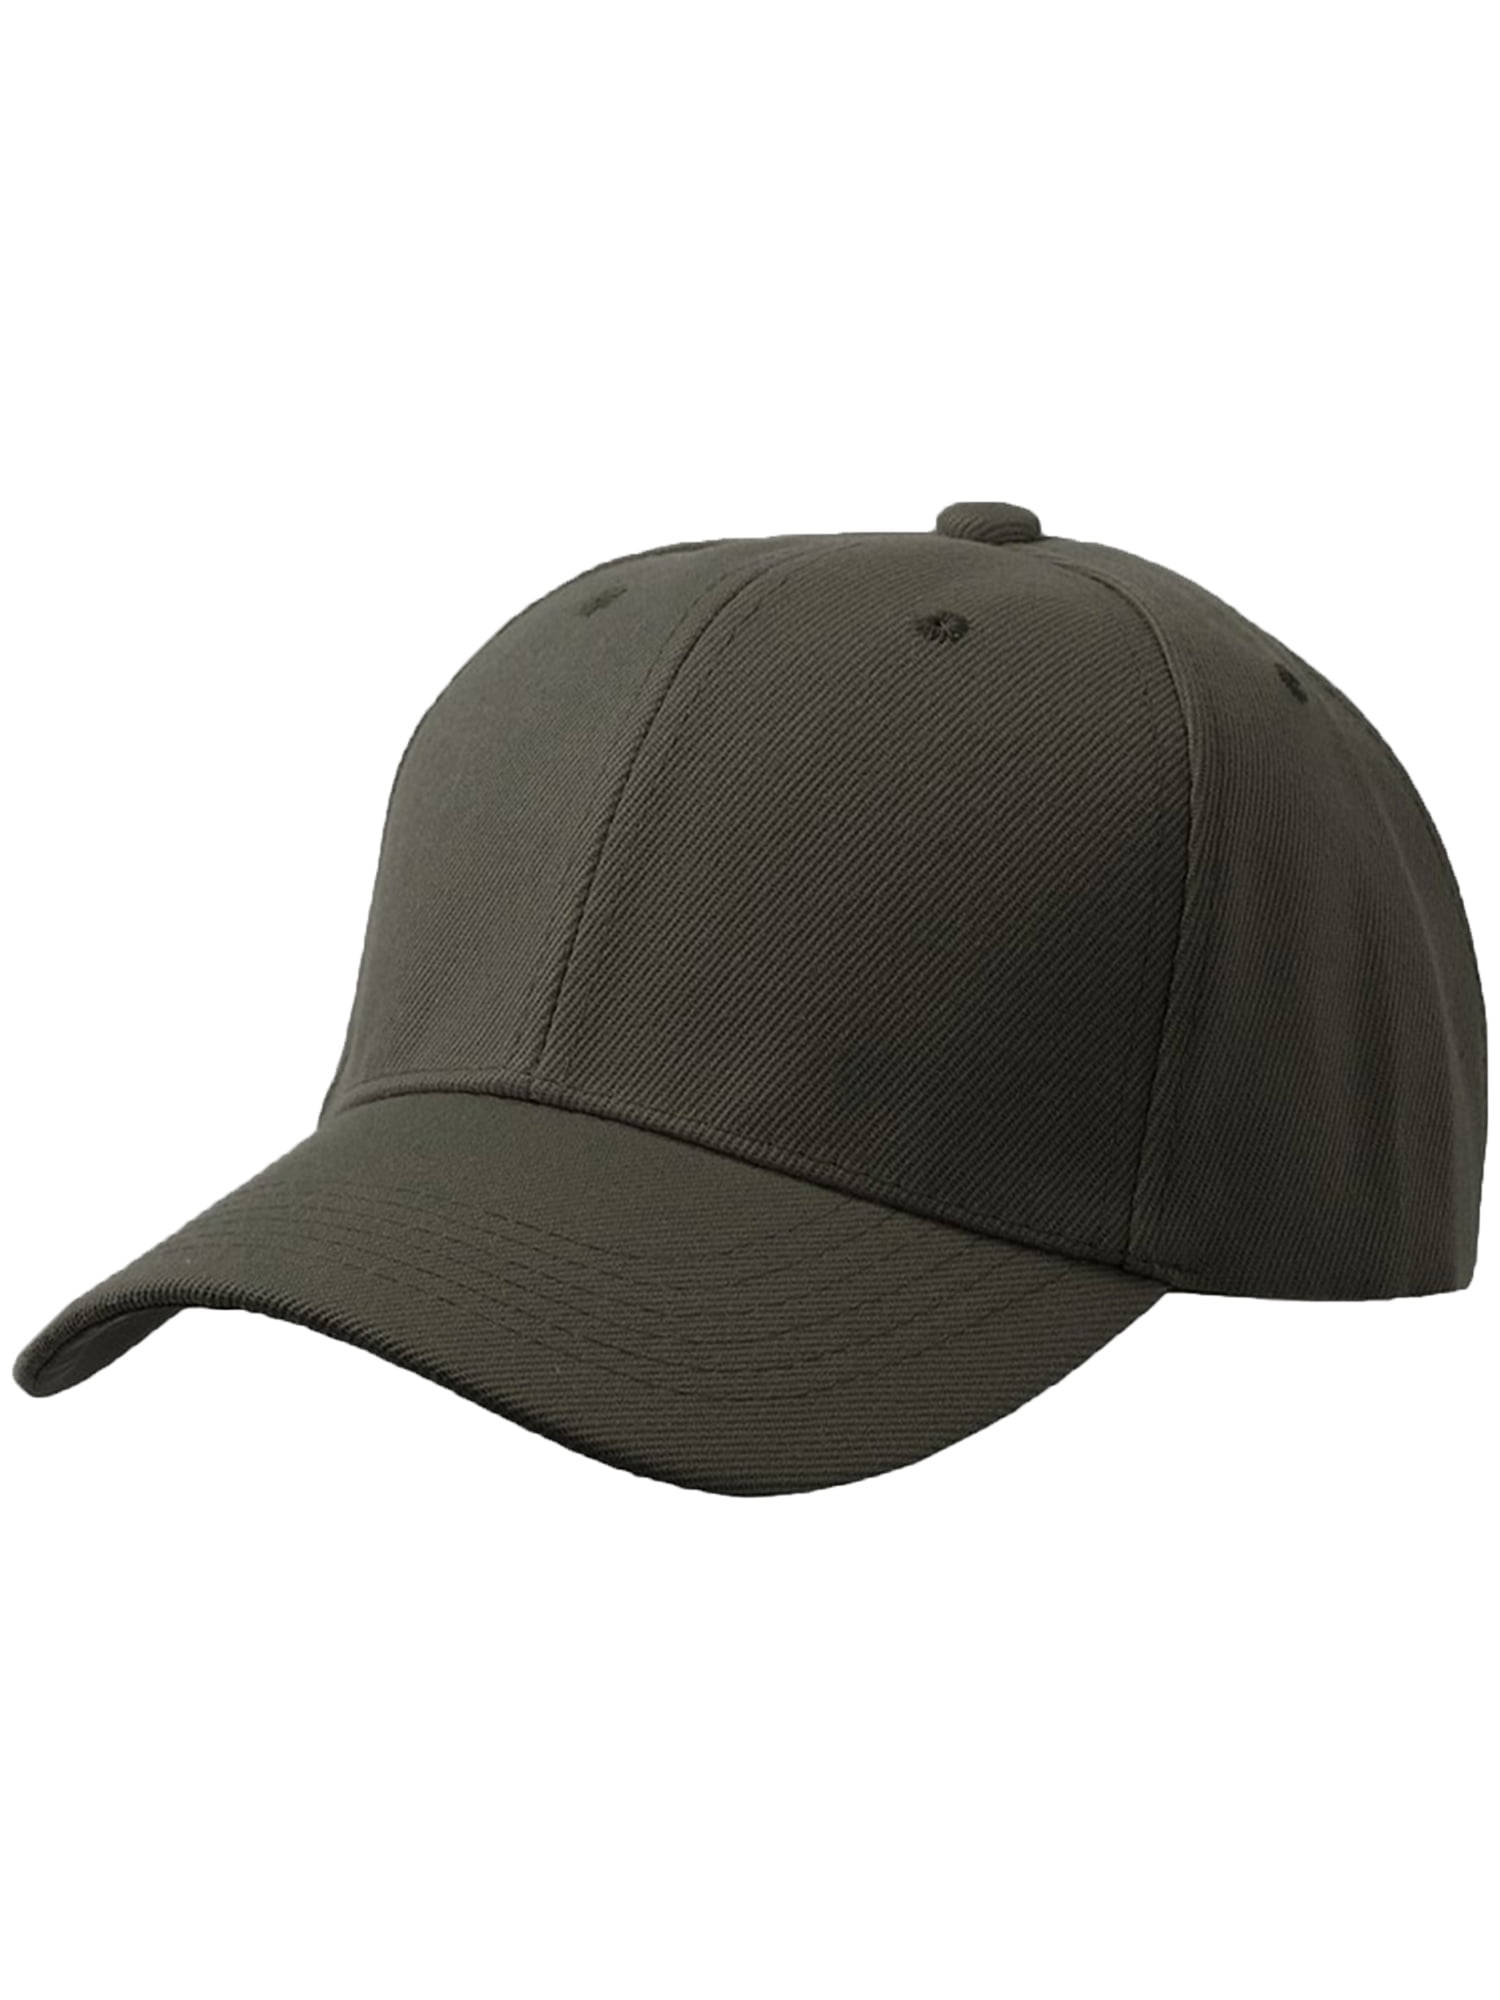 Men\'s Plain Baseball Black Hat-3P Olive Charcoal Curved Visor Adjustable Cap